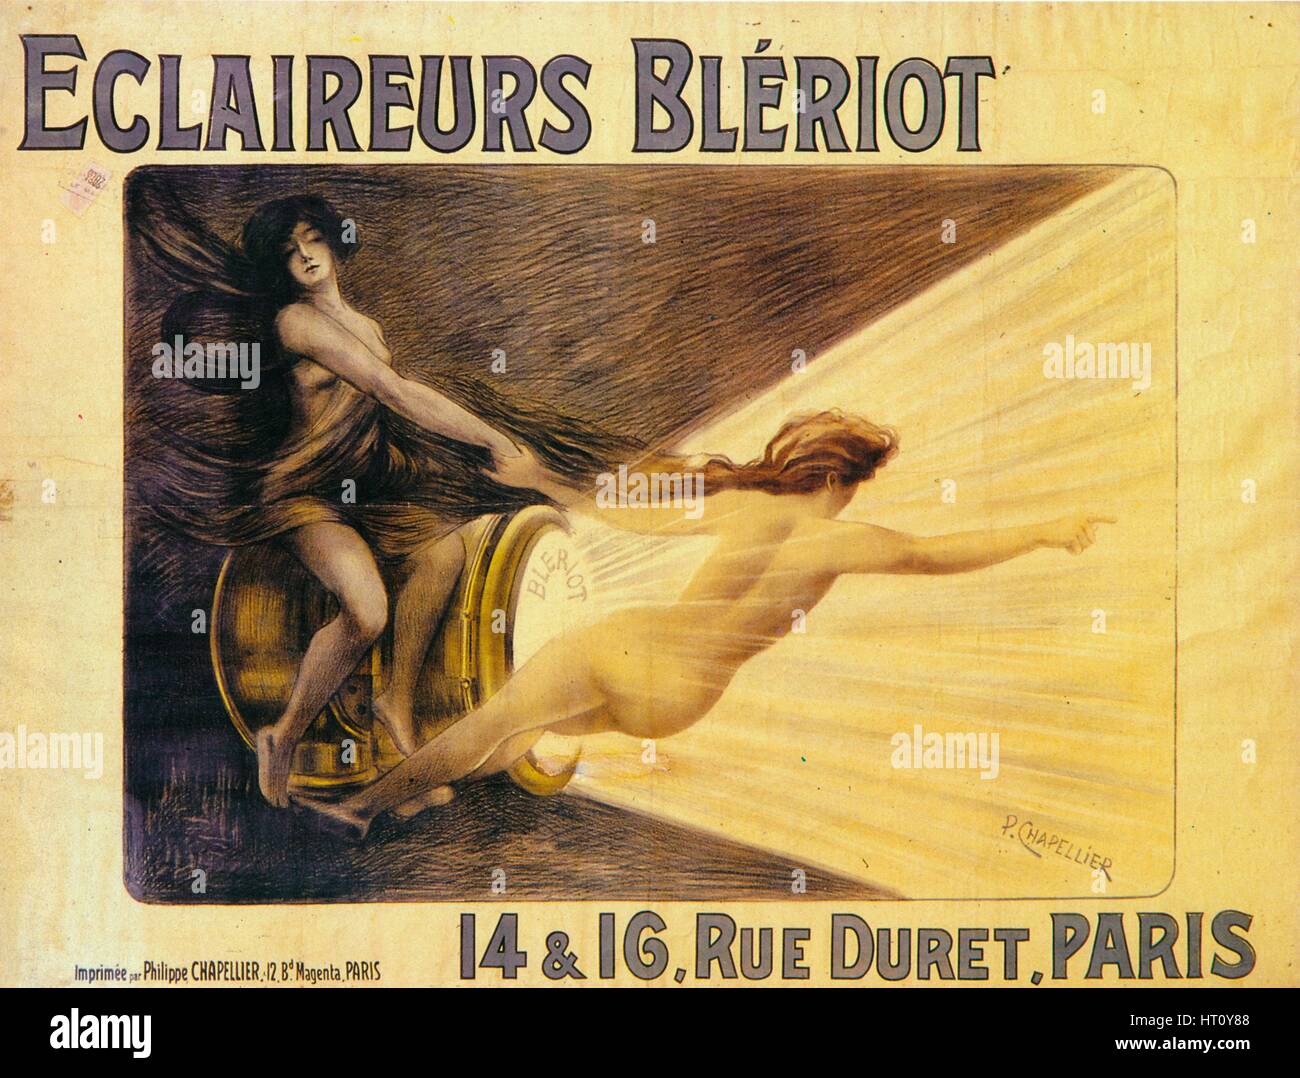 Publicité pour les projecteurs Blériot, c1905. Artiste : Philippe Chapellier. Banque D'Images